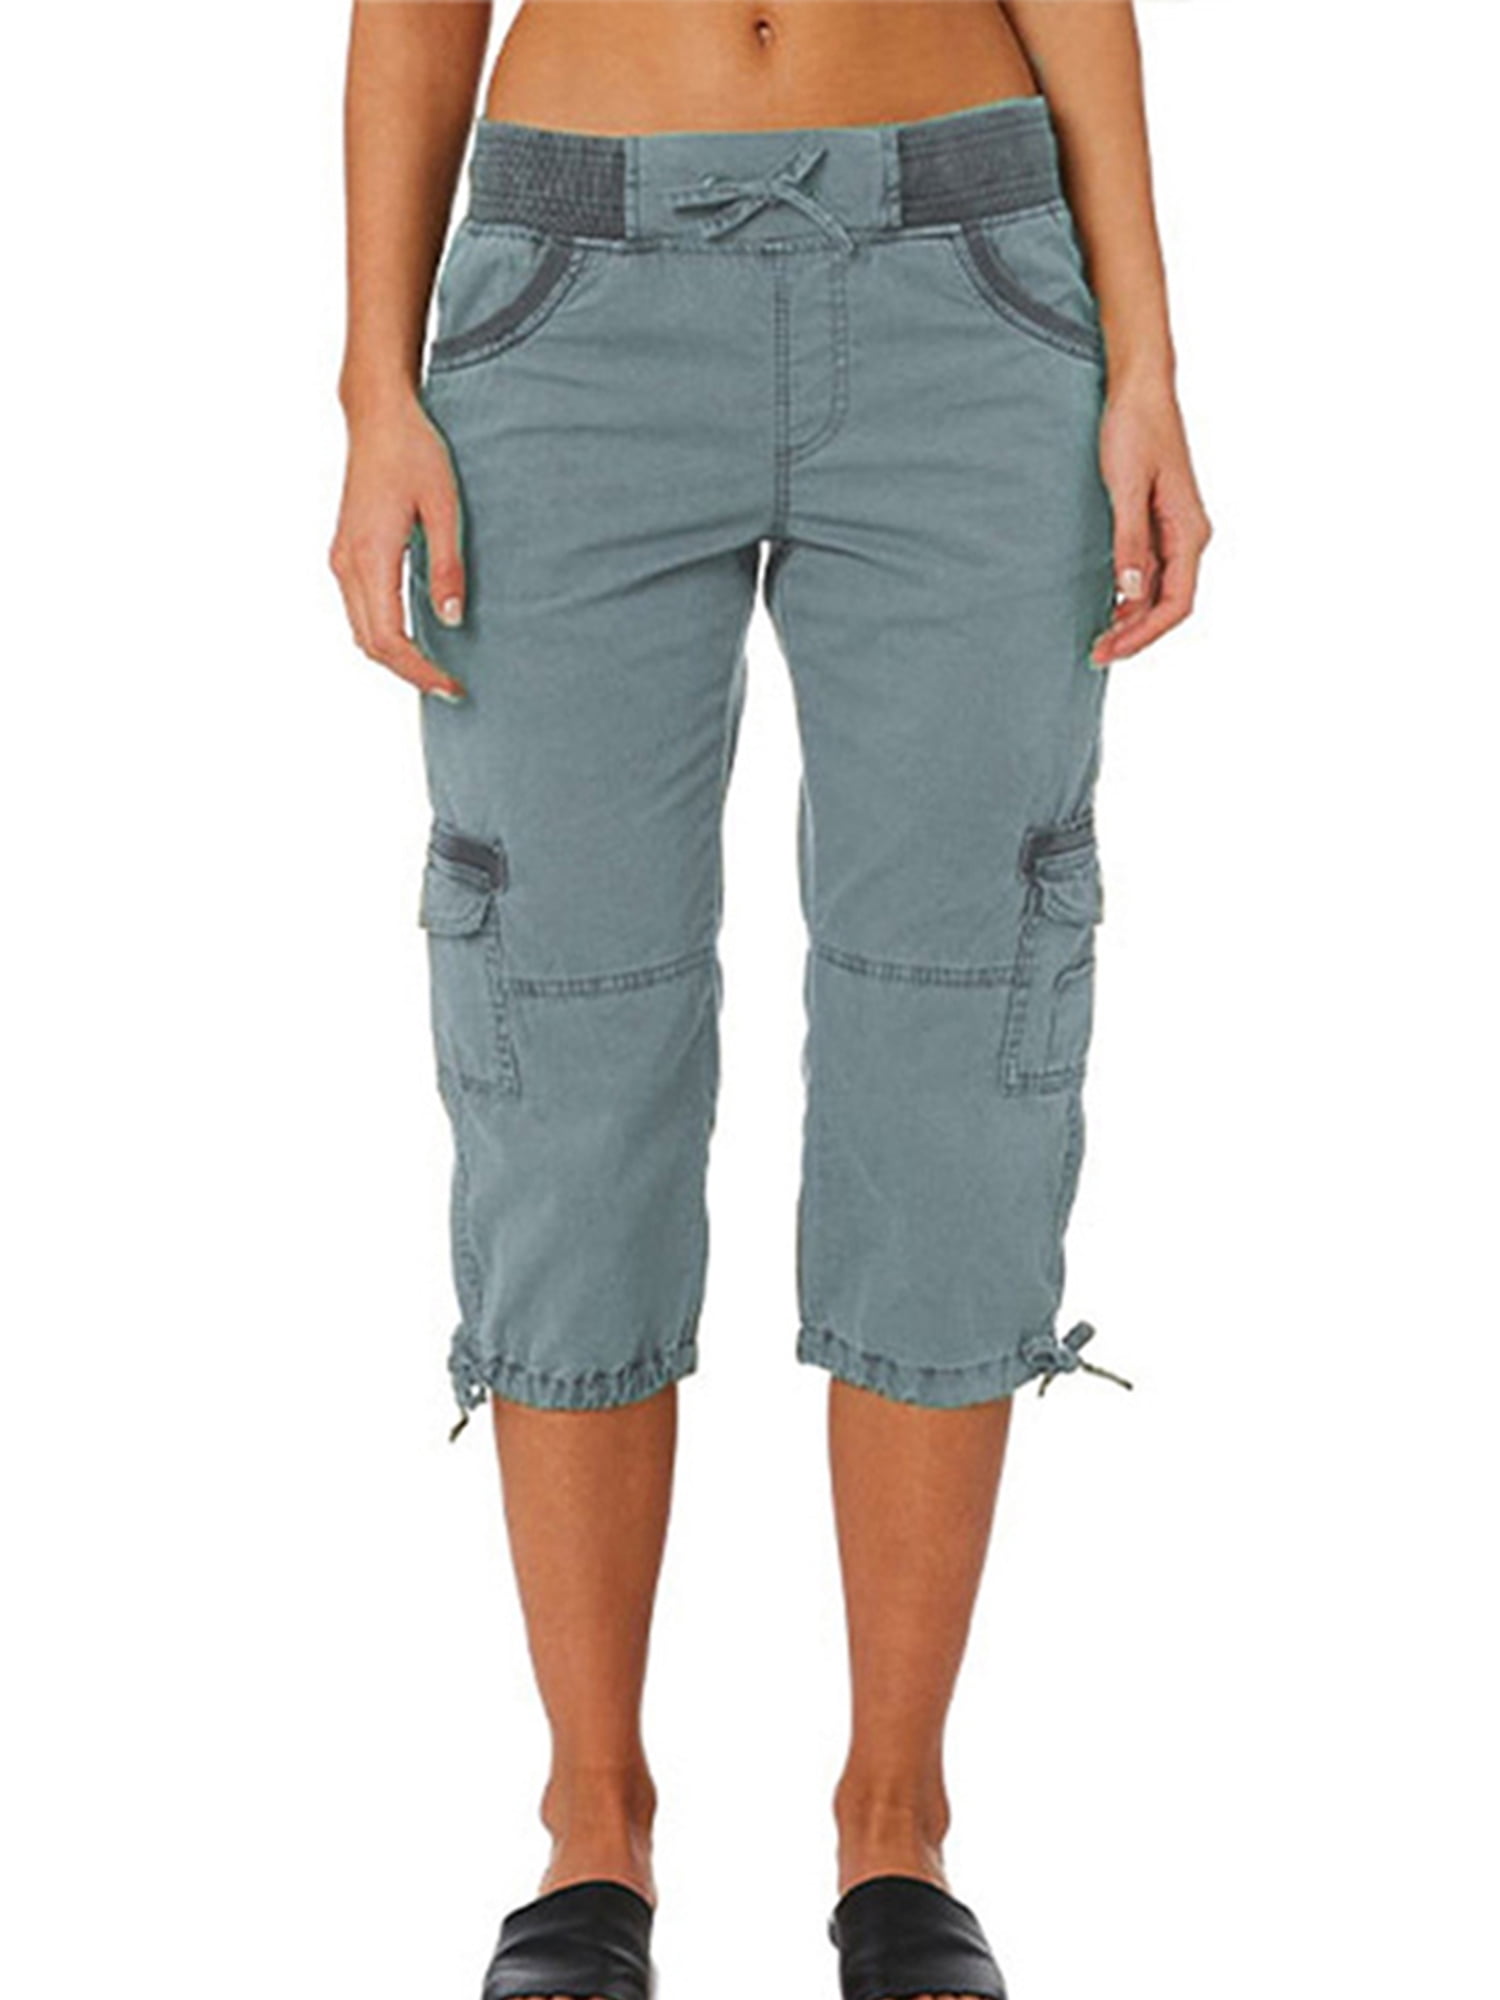 Womens Drawstring 3/4 Length Casual Capri Shorts Bermuda Crop Pants Trousers 